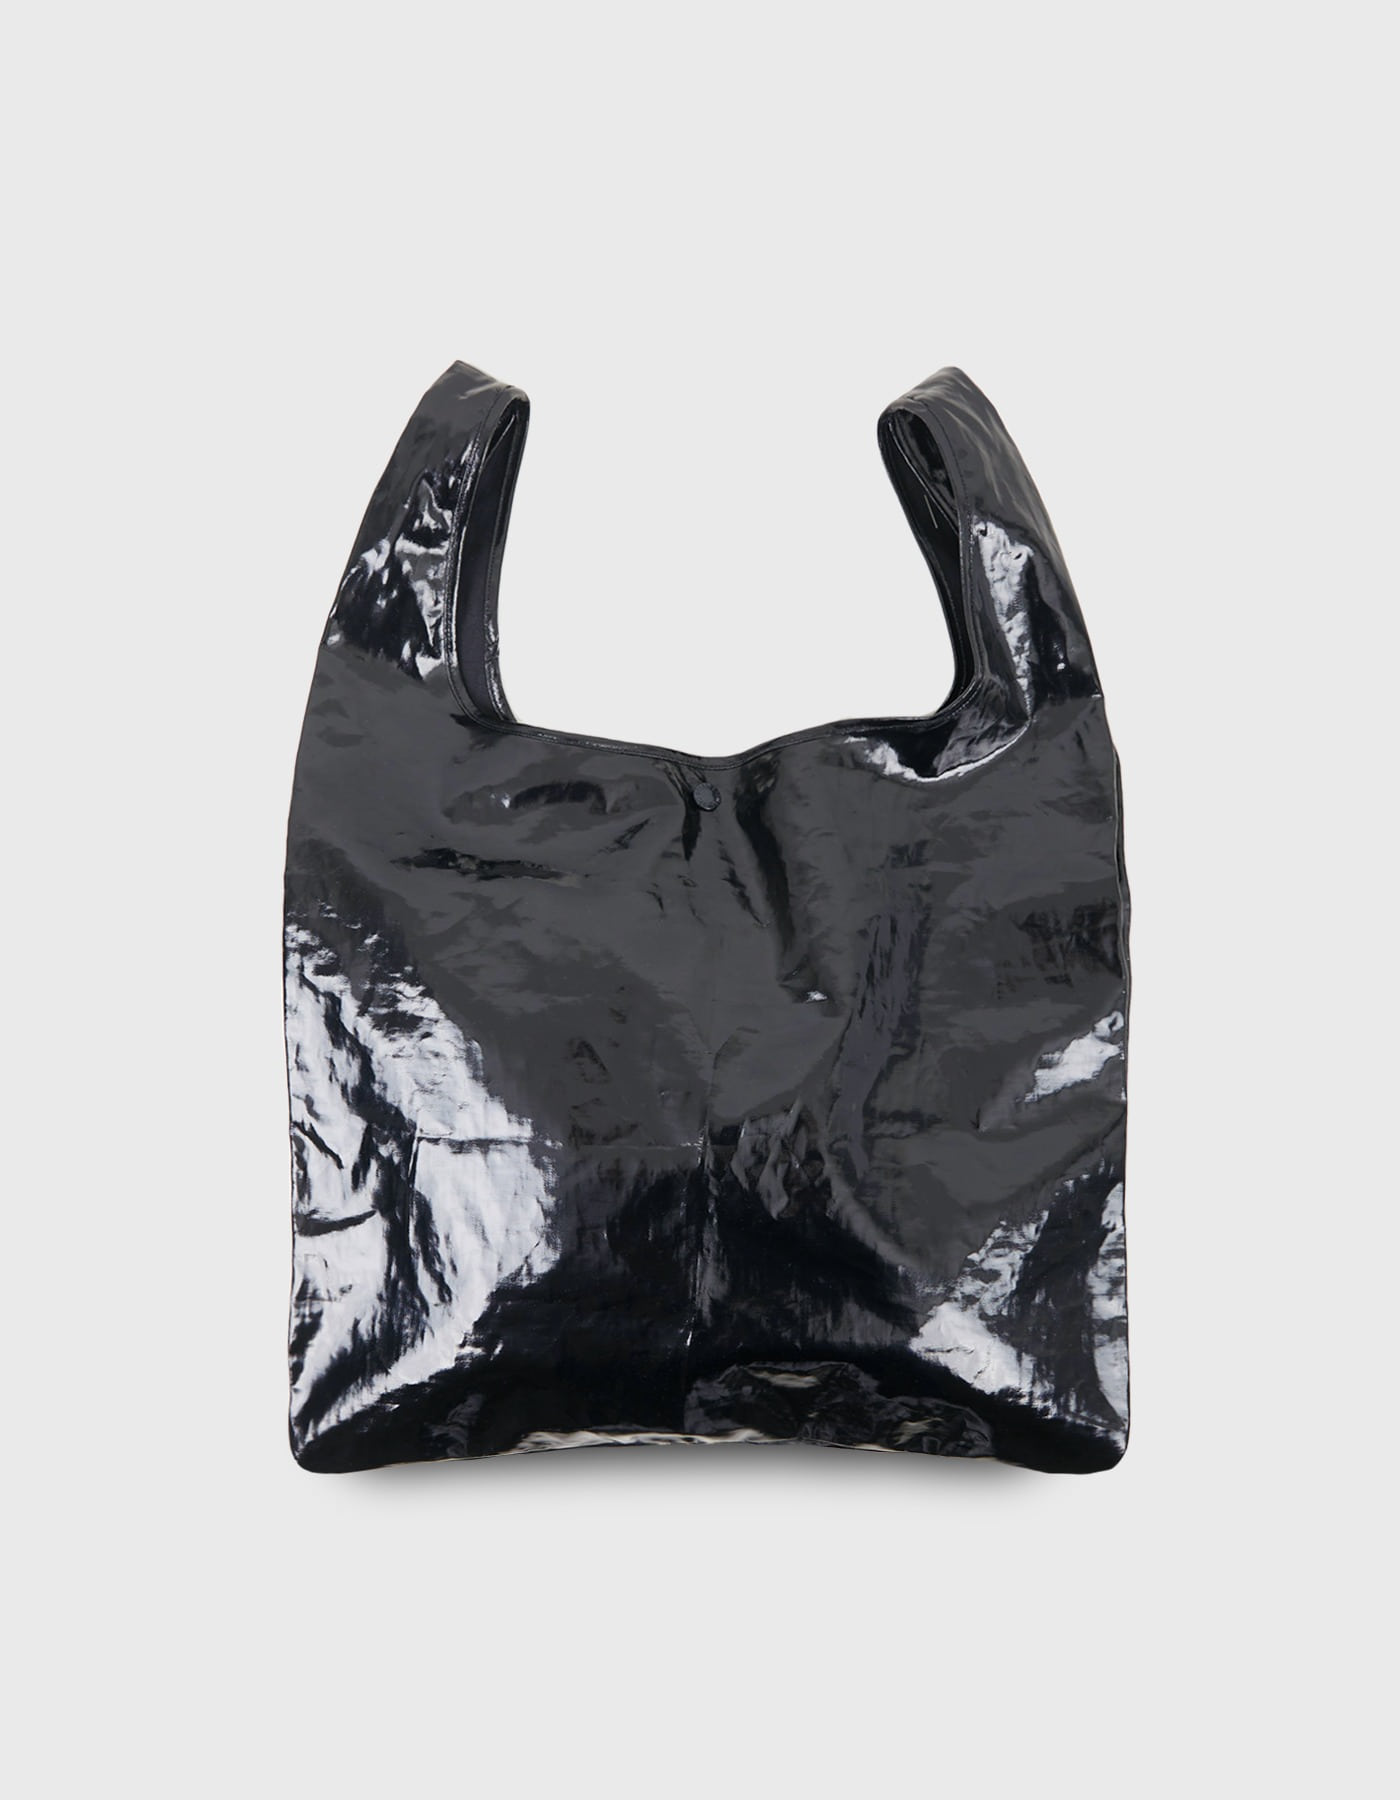 PATENT PLASTIC BAG / Black